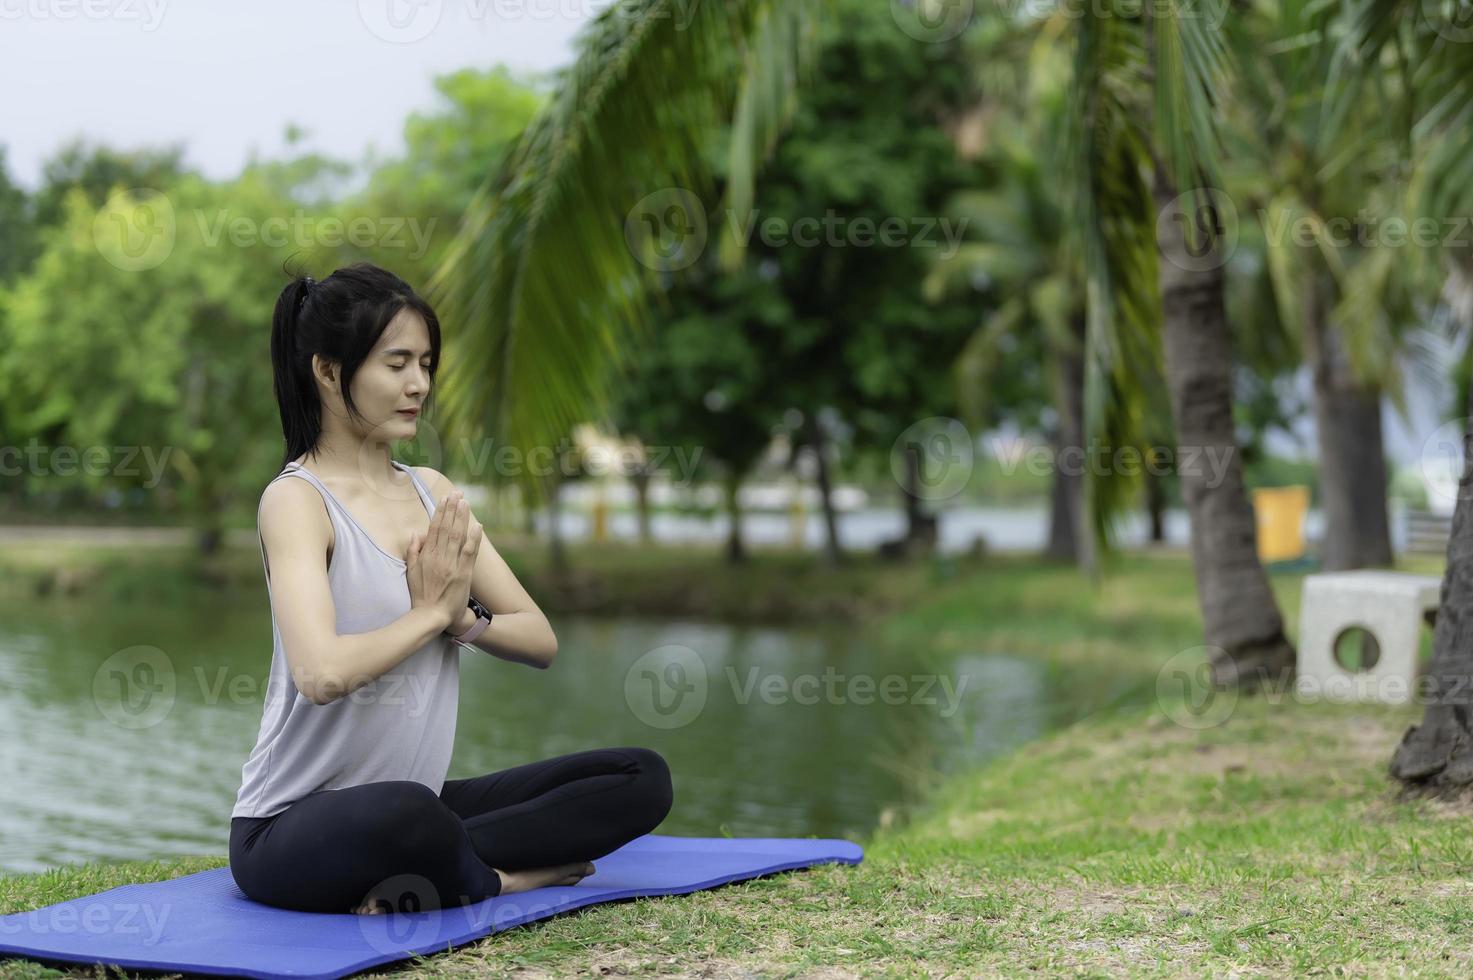 retrato de una joven asiática que juega yoga en el parque público foto